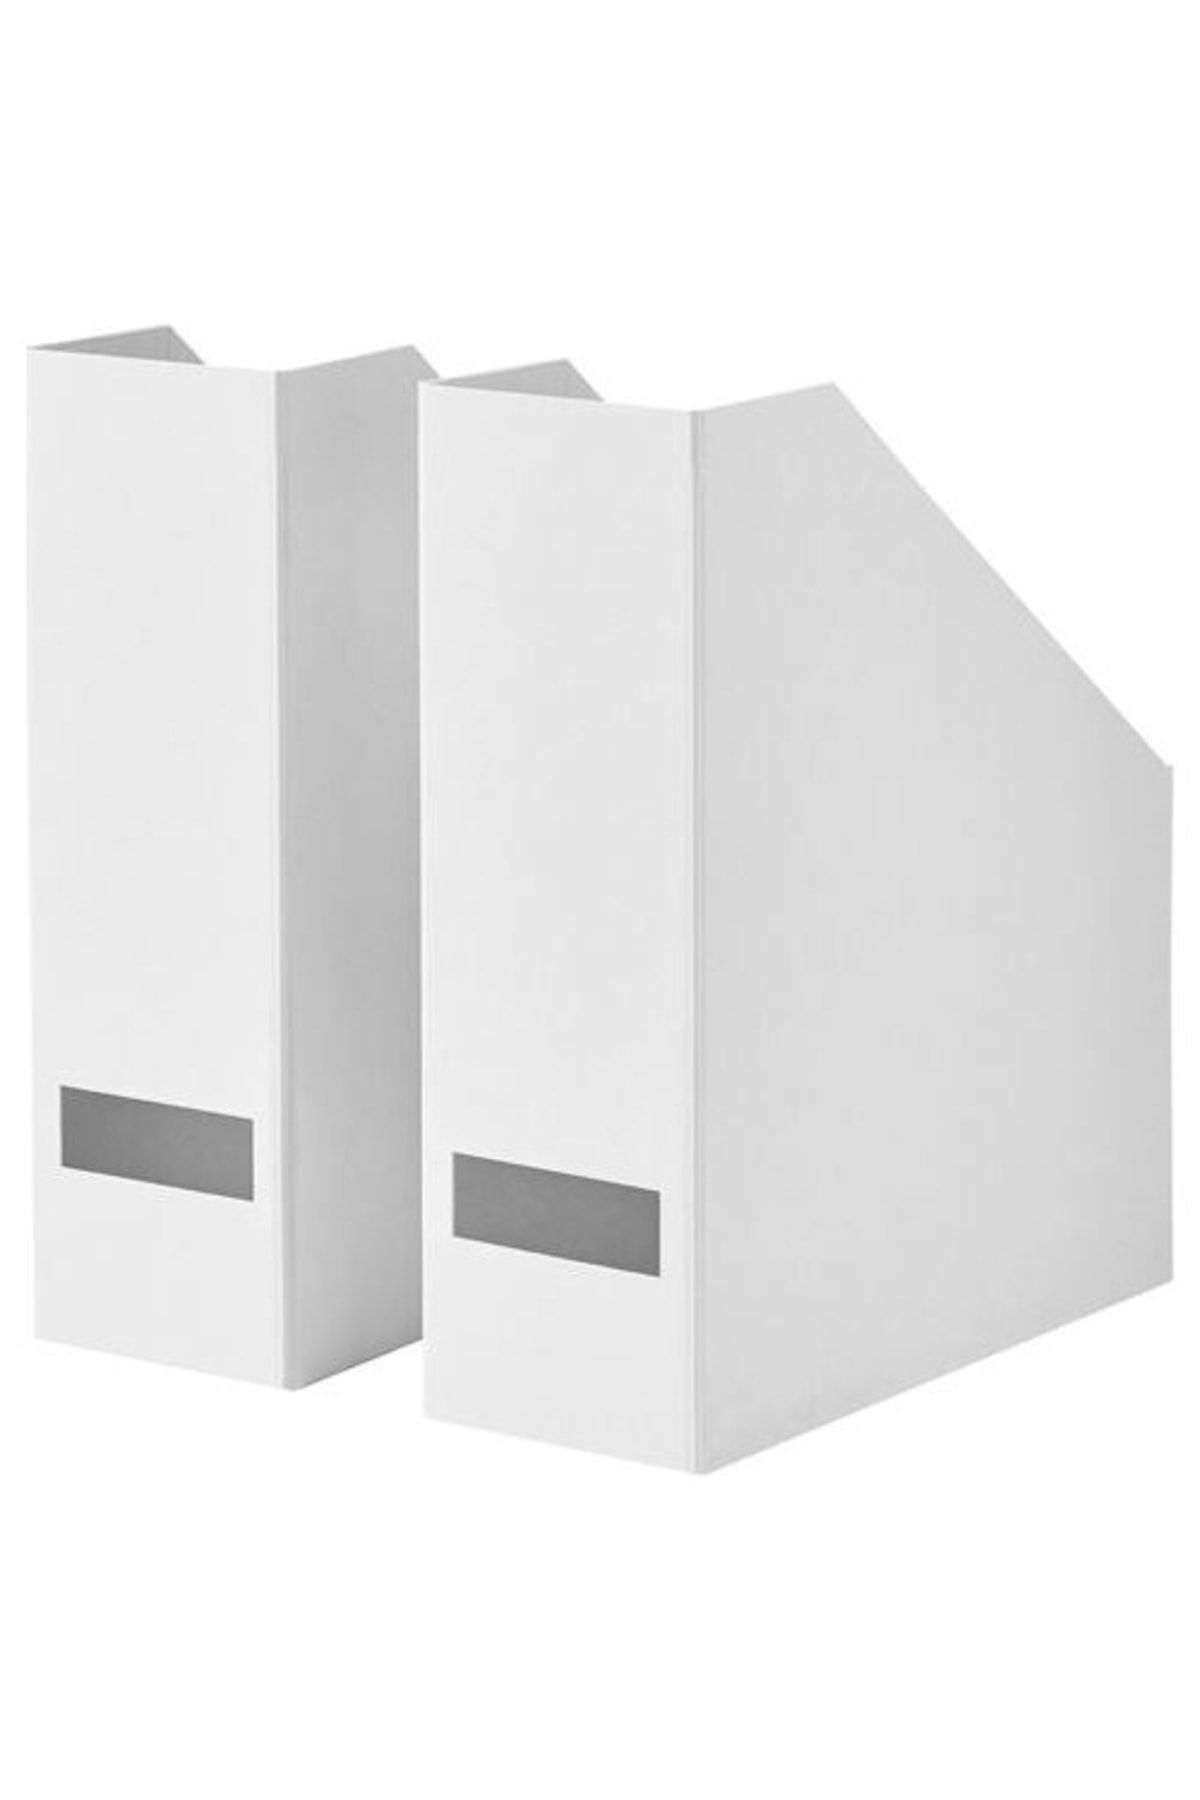 IKEA Tjena Karton Dosyalık - Klasör - Evrak Dosyası - 2 Adet